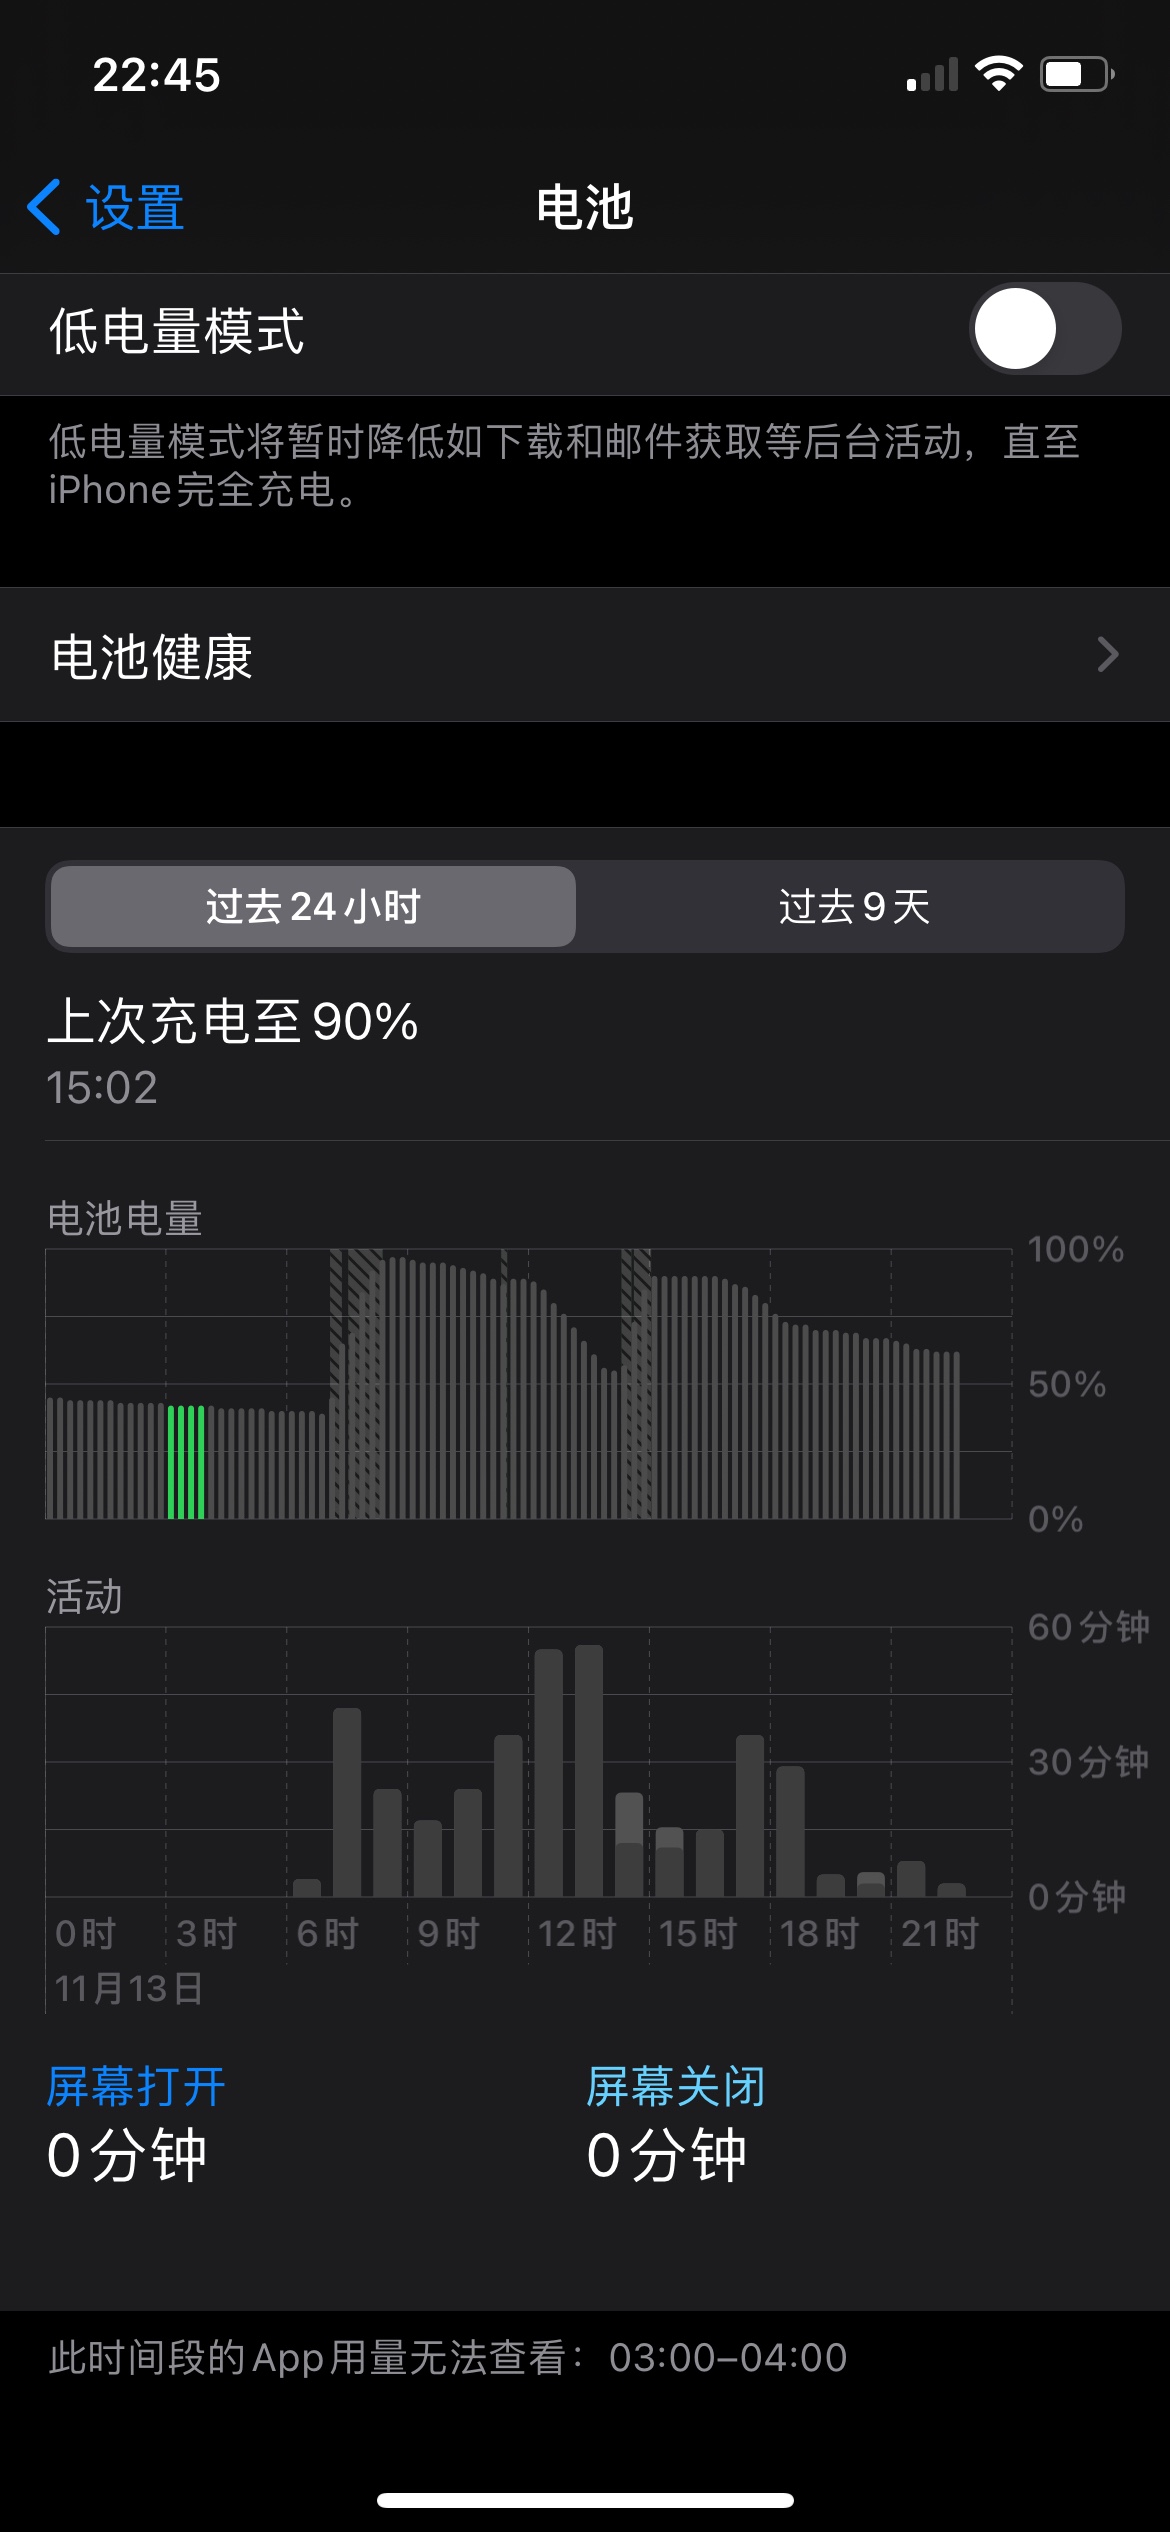 iphone12晚上掉电百分十以上